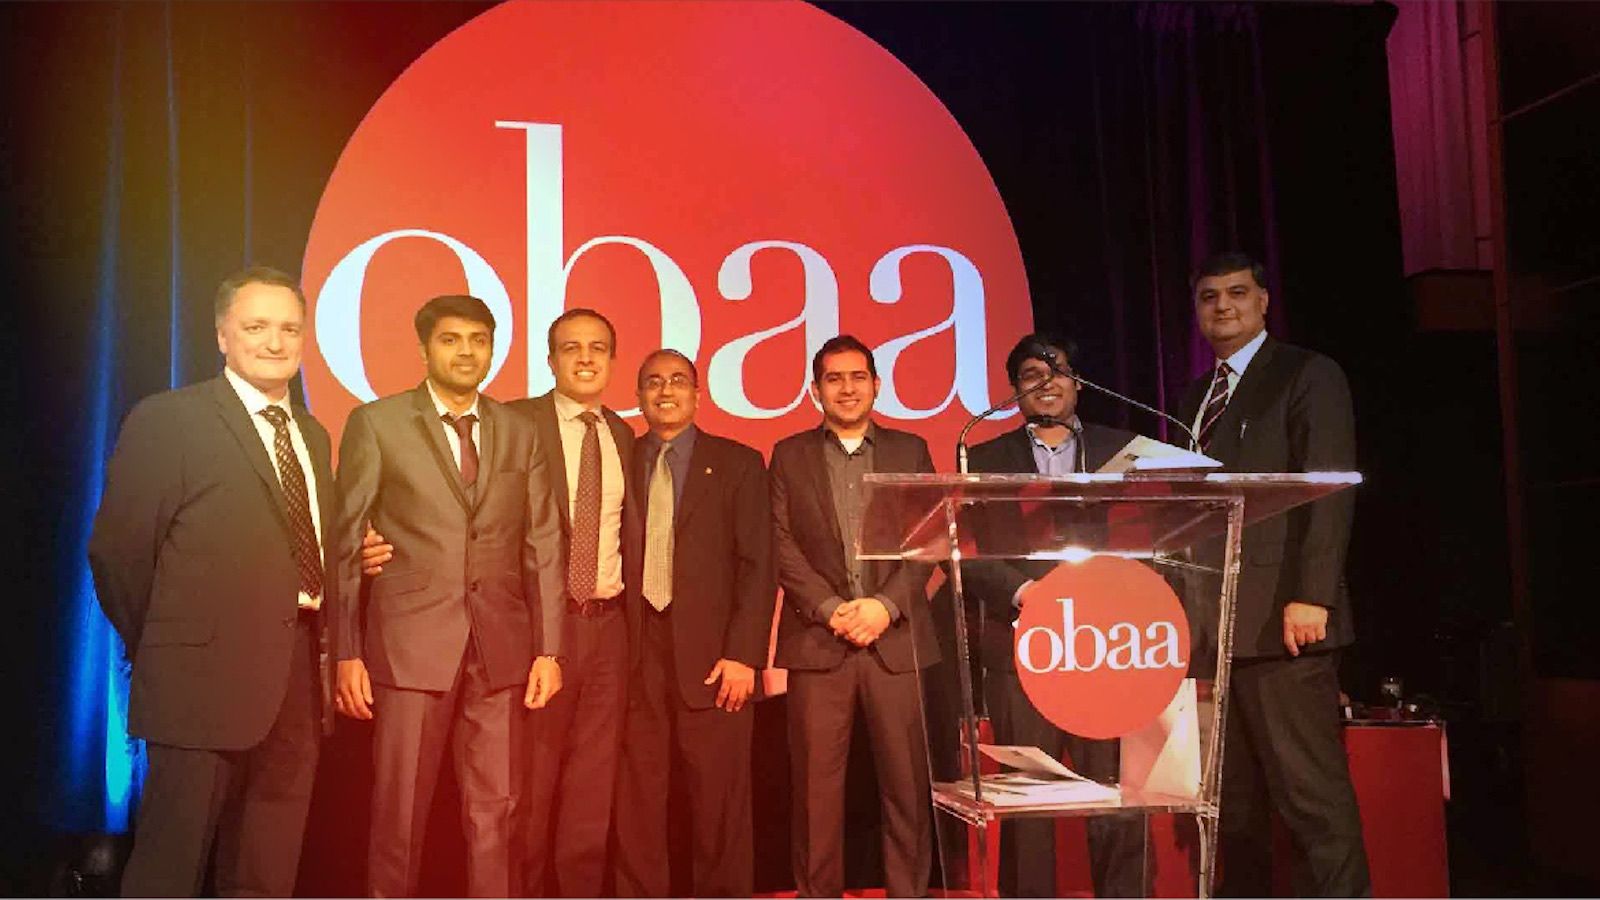 OBAA mobileLIVE Award